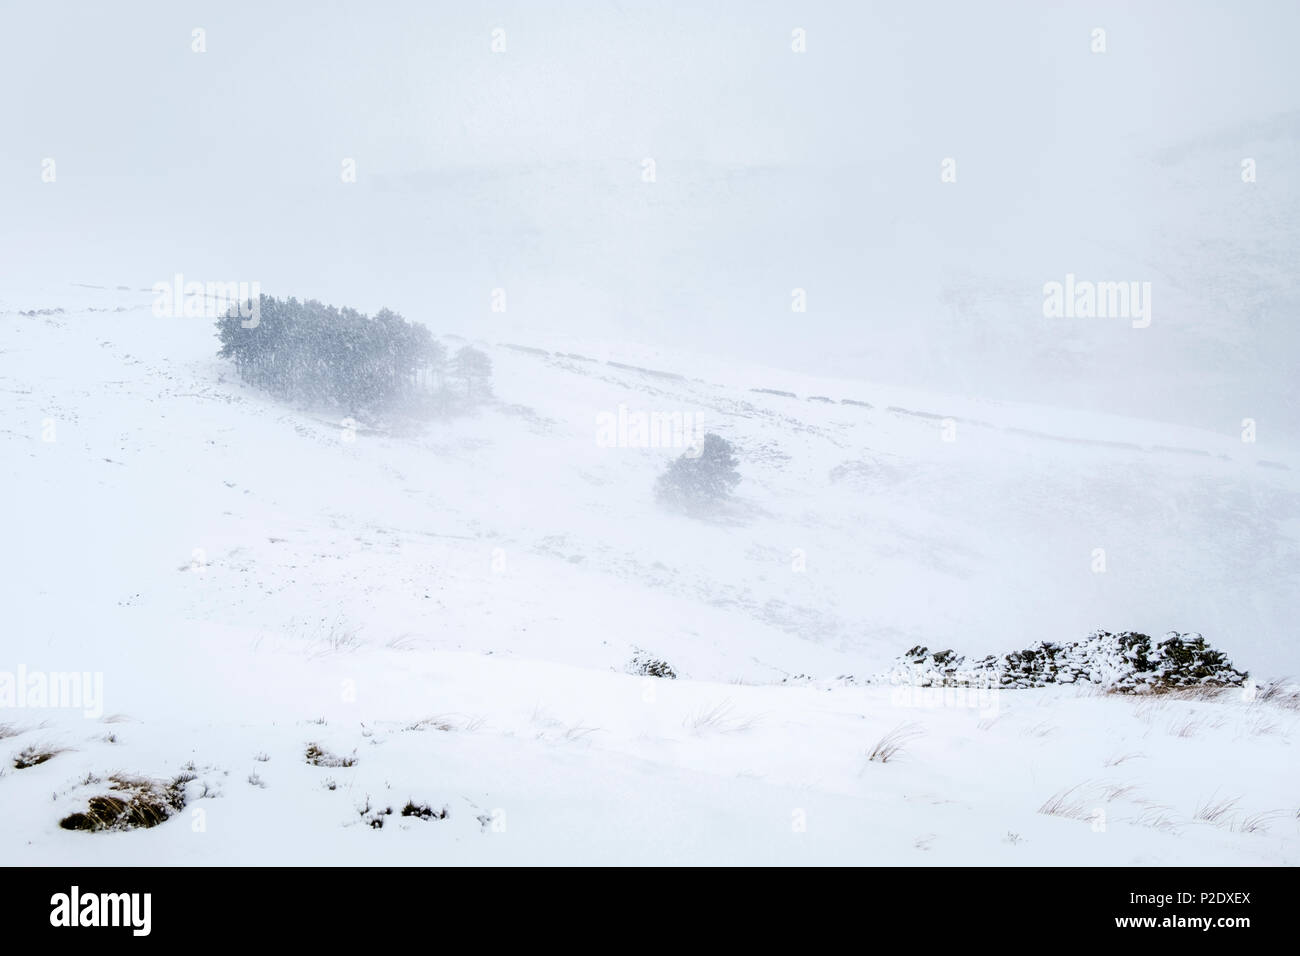 Un blizzard dans le Peak District campagne. Neige de l'hiver sur les collines autour de Grindsbrook Clough, Kinder Scout, Derbyshire Peak District, England, UK Banque D'Images